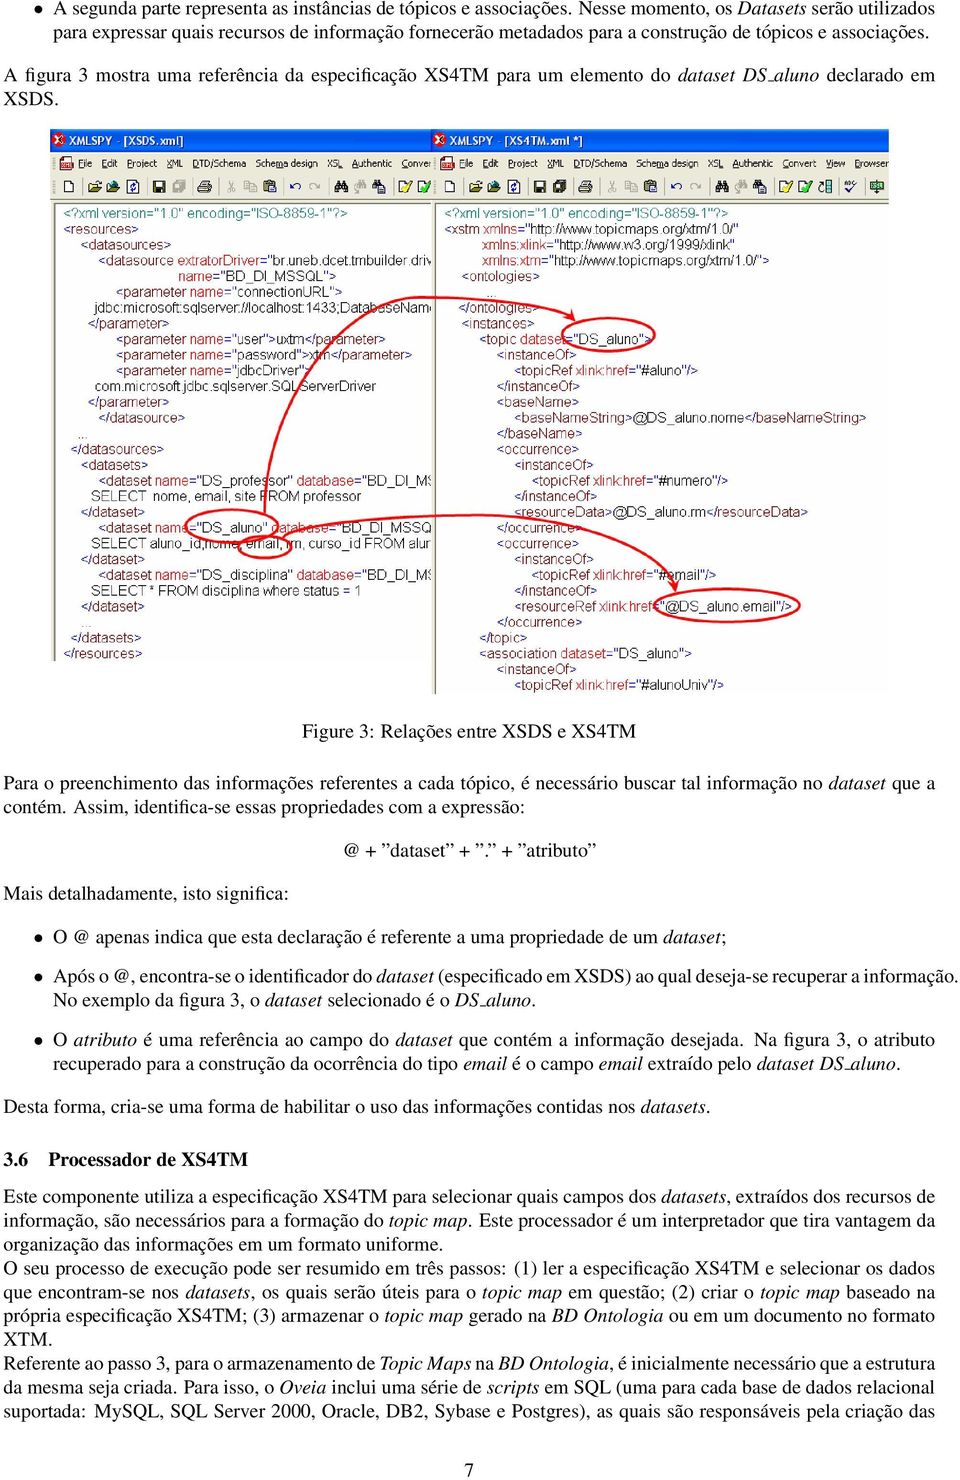 A figura 3 mostra uma referência da especificação XS4TM para um elemento do dataset DS aluno declarado em XSDS.